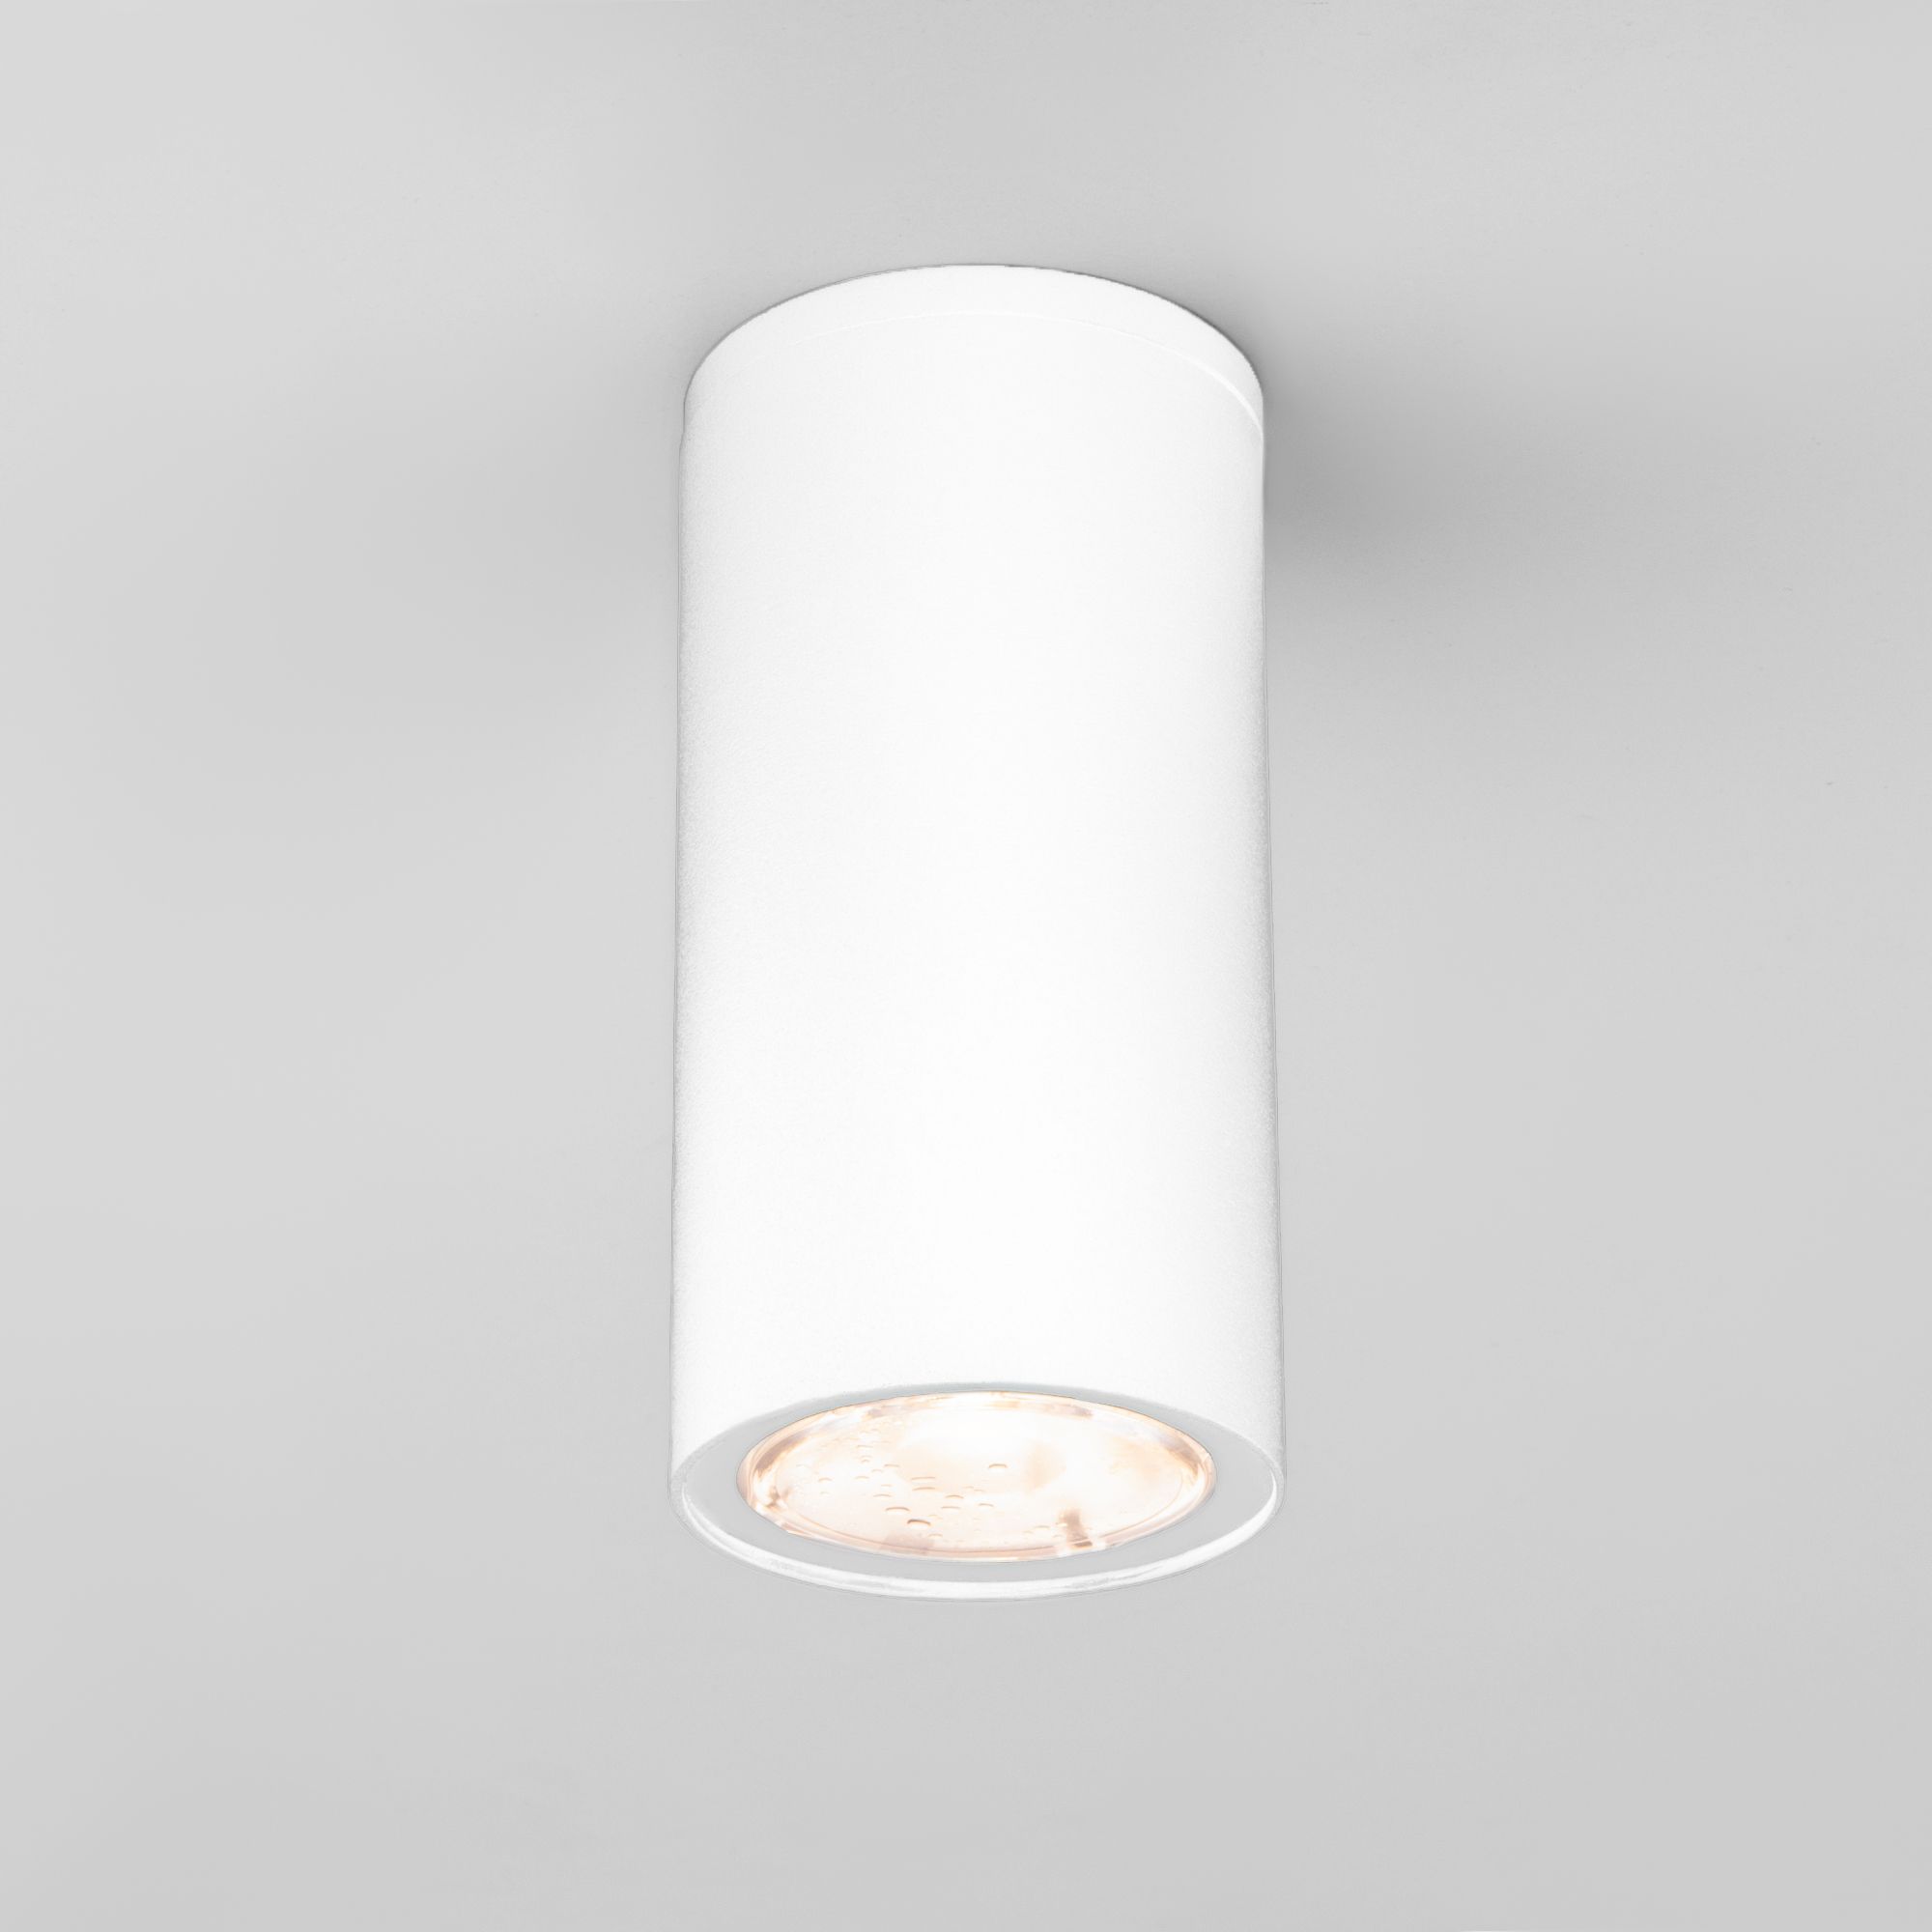 Уличный потолочный светильник Light LED 2102 IP65 35129/H белый